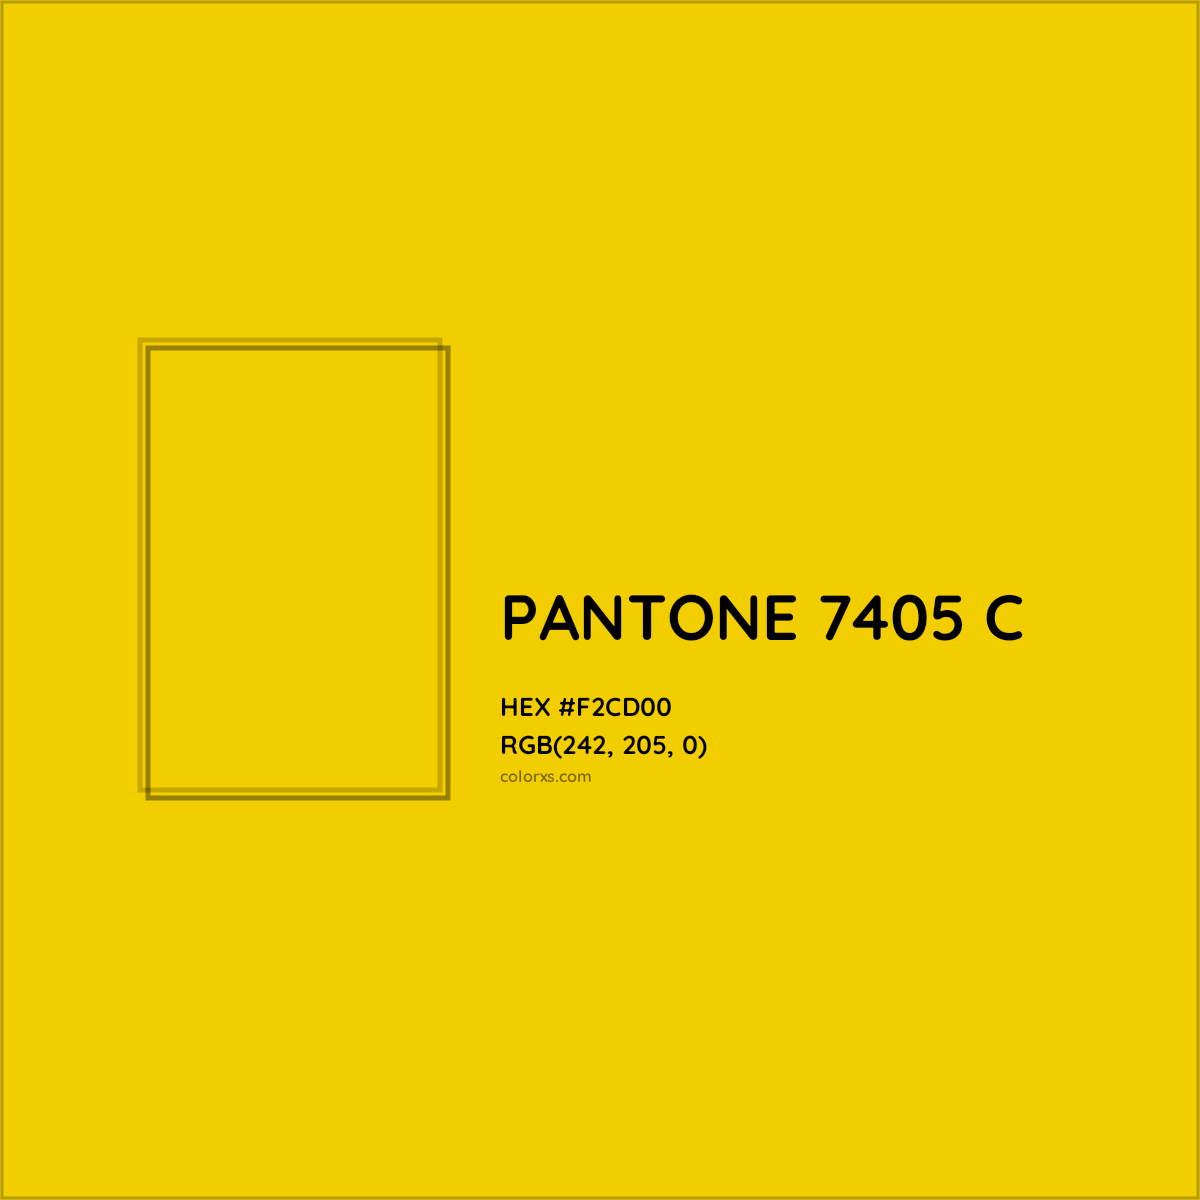 HEX #F2CD00 PANTONE 7405 C CMS Pantone PMS - Color Code